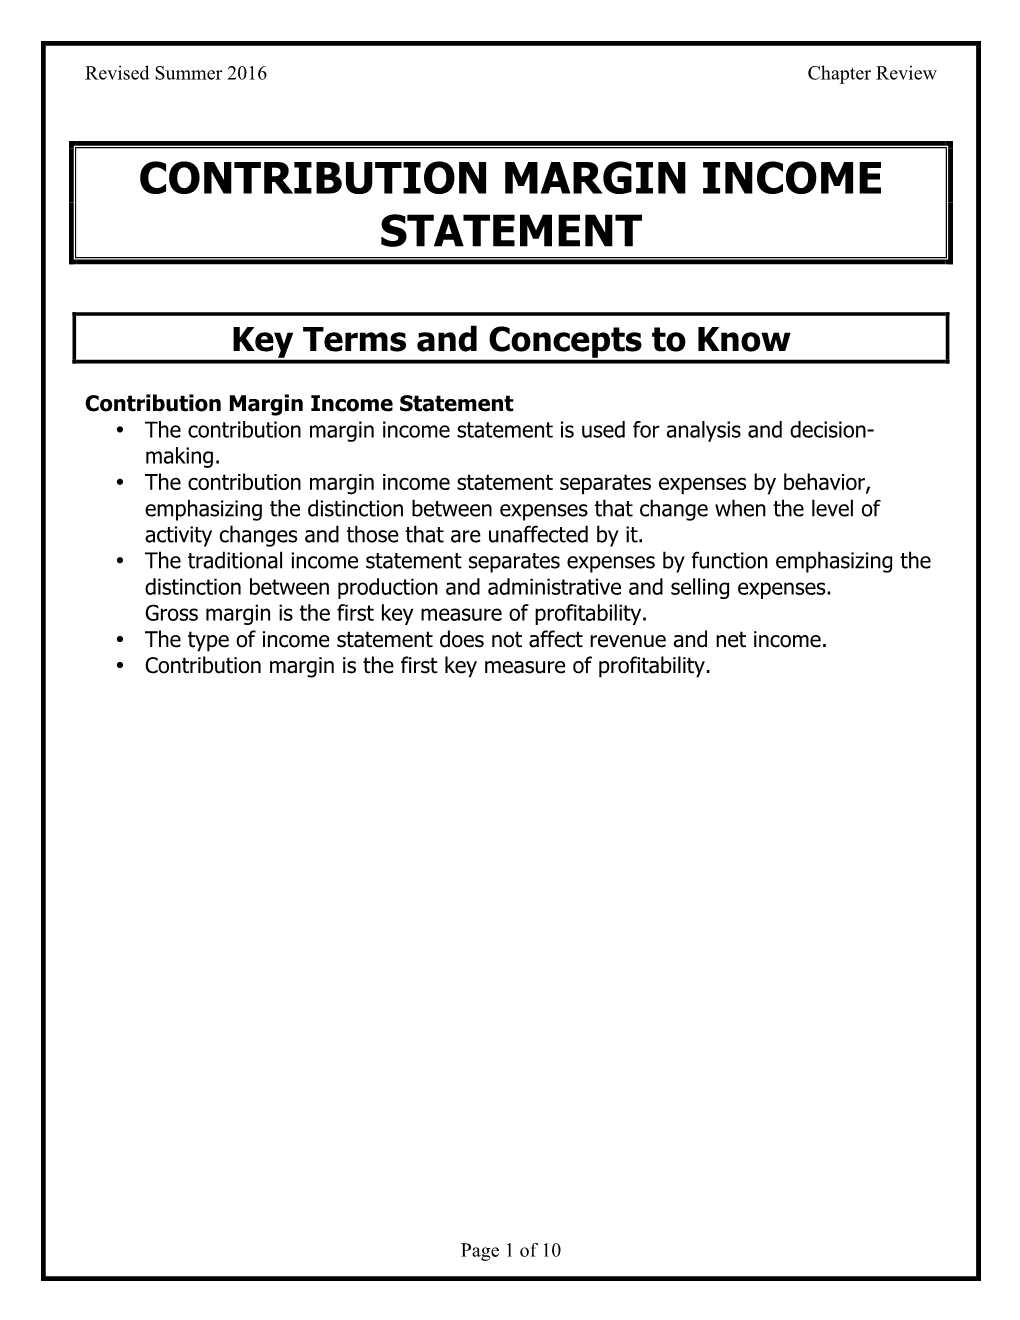 Contribution Margin Income Statement